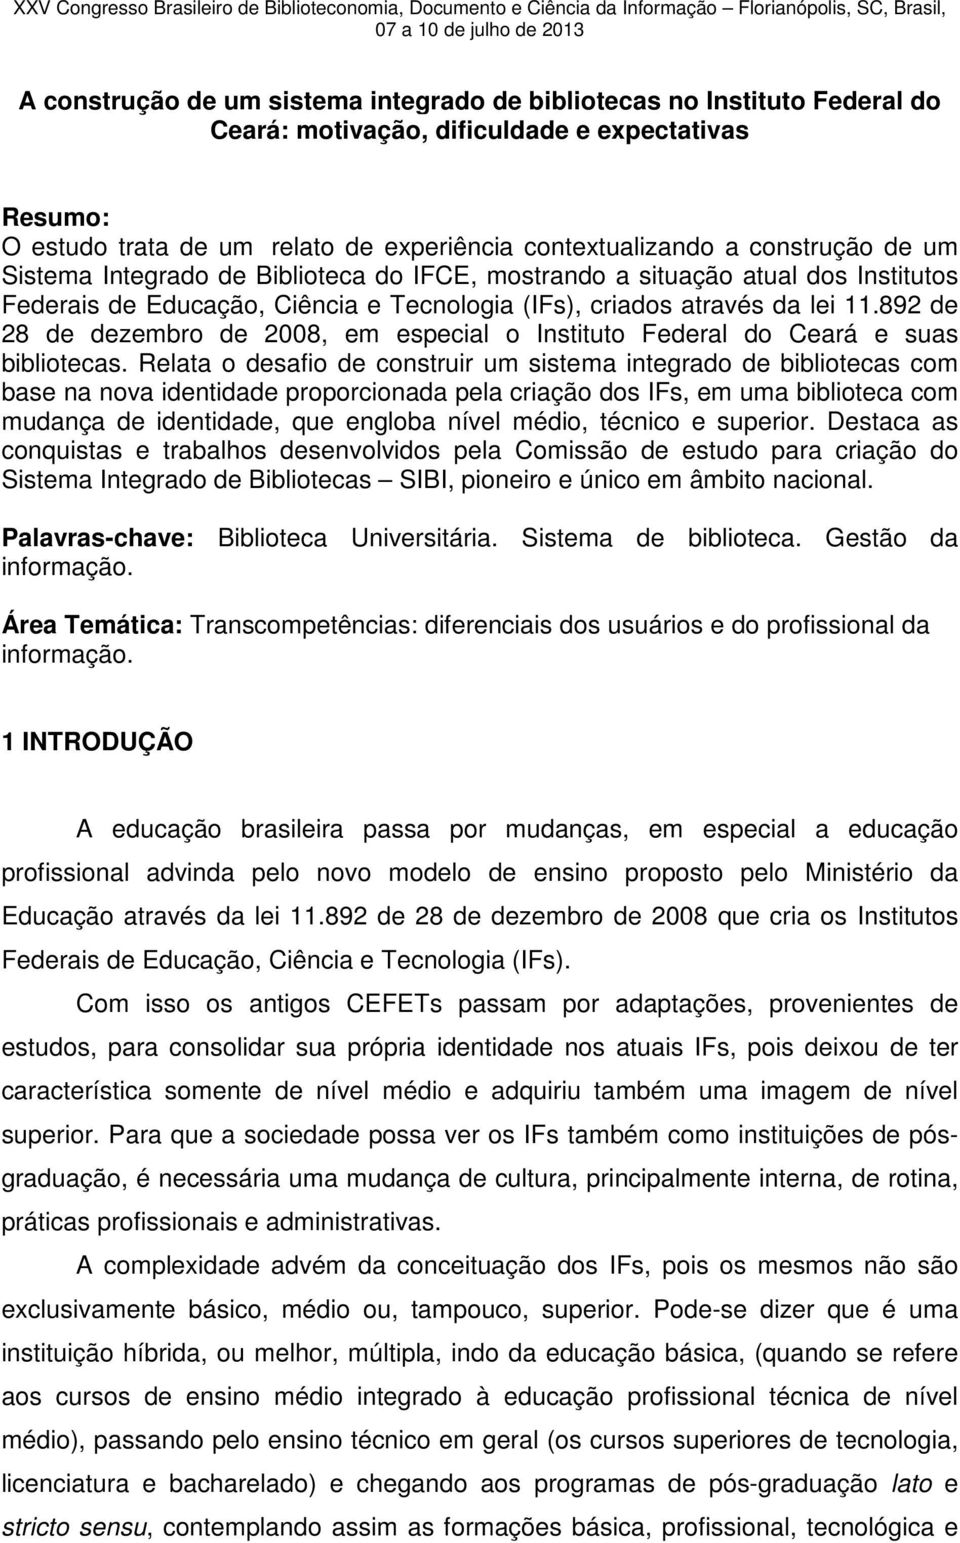 criados através da lei 11.892 de 28 de dezembro de 2008, em especial o Instituto Federal do Ceará e suas bibliotecas.